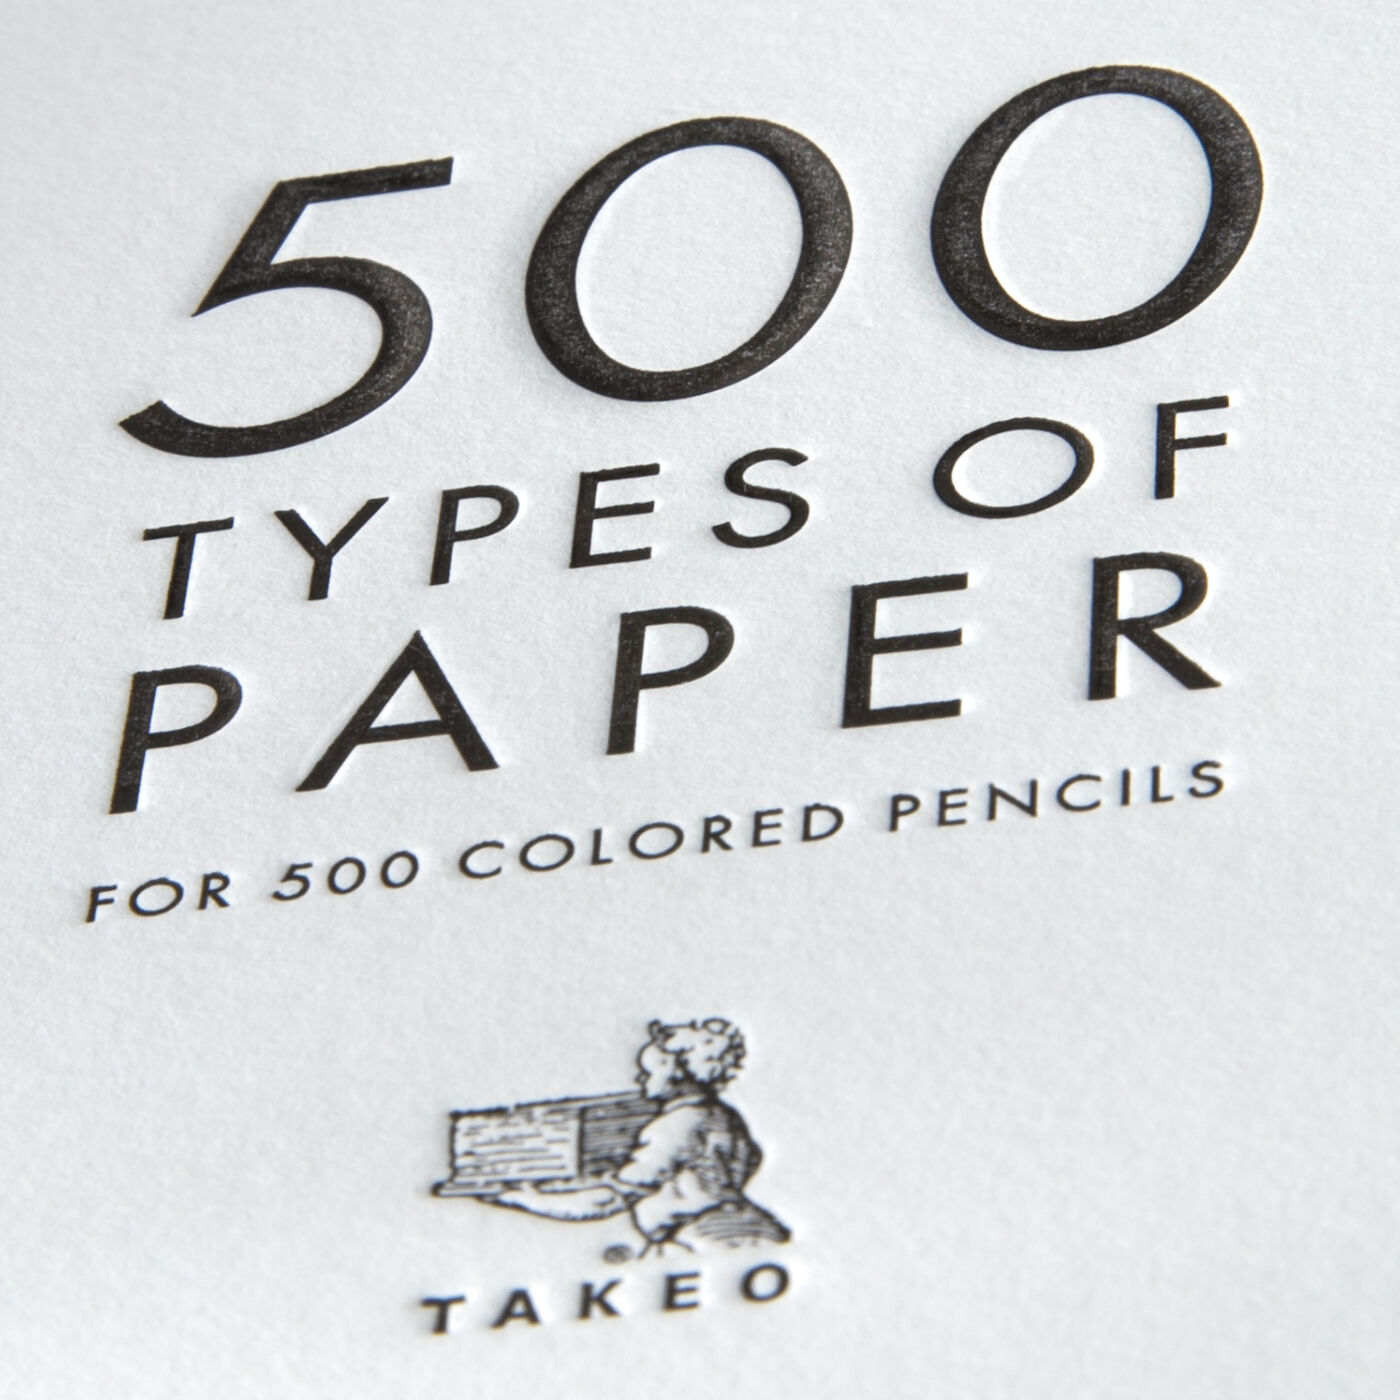 紙の専門商社 竹尾が選ぶ 500種類の紙セットの会 ペーパー 500